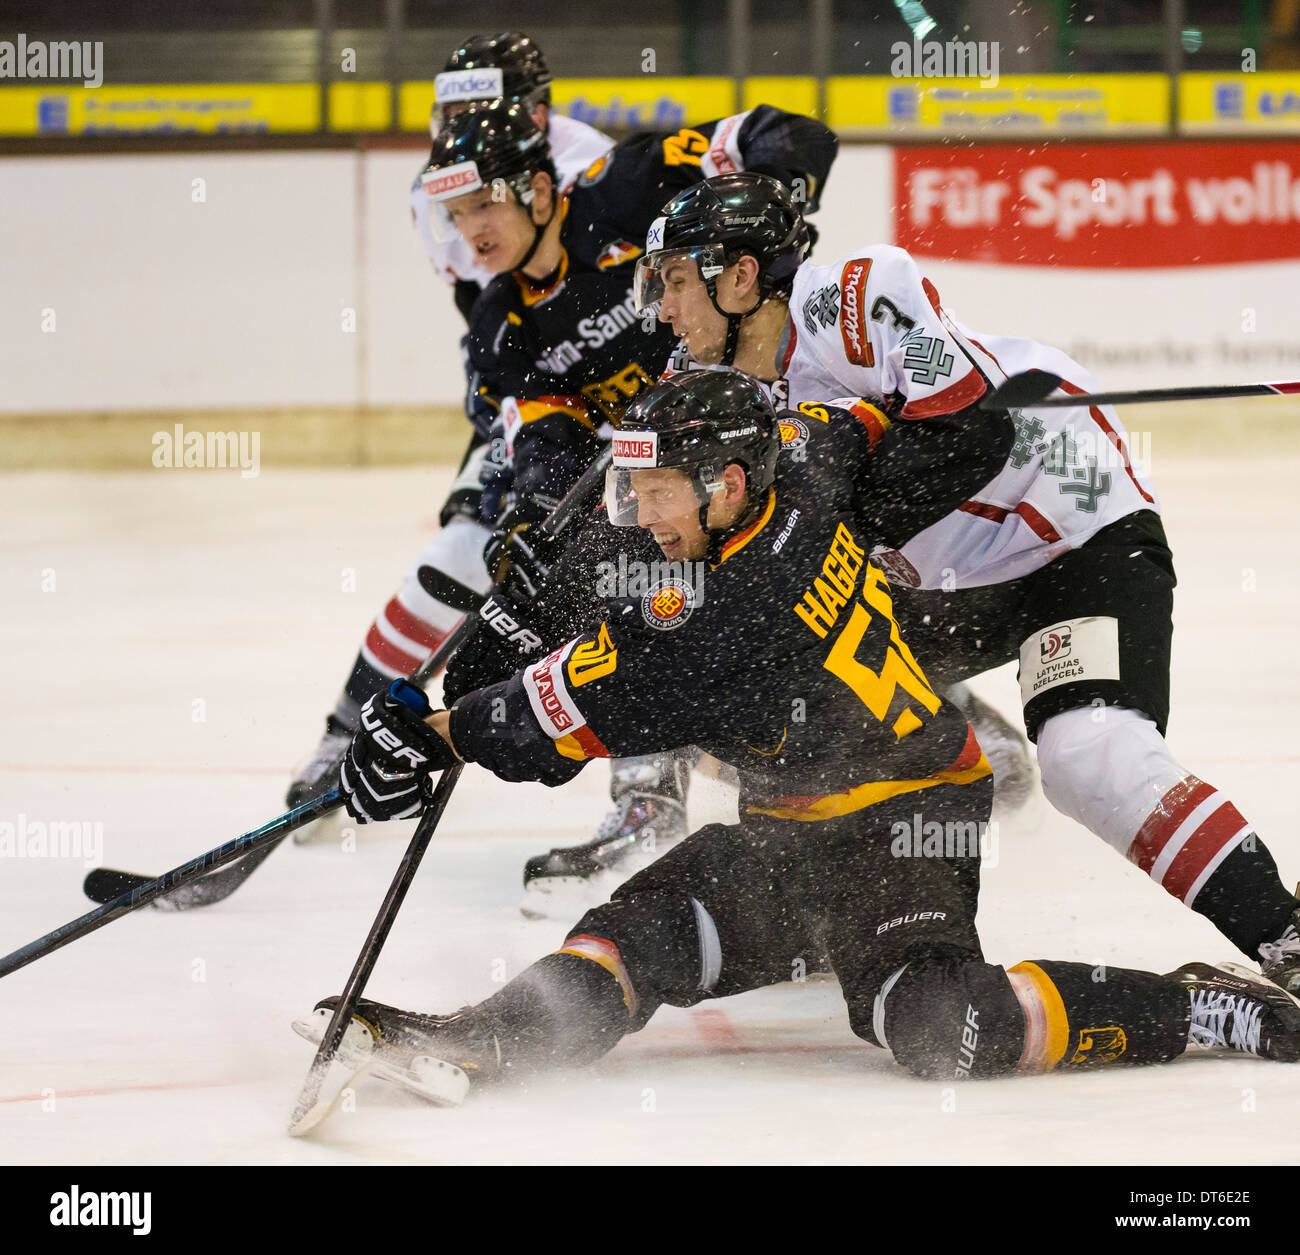 Deutsche internationale Eishockeyspieler Patrick Hager, vorne, spielt für die deutsche Nationalmannschaft gegen Lettland. Stockfoto